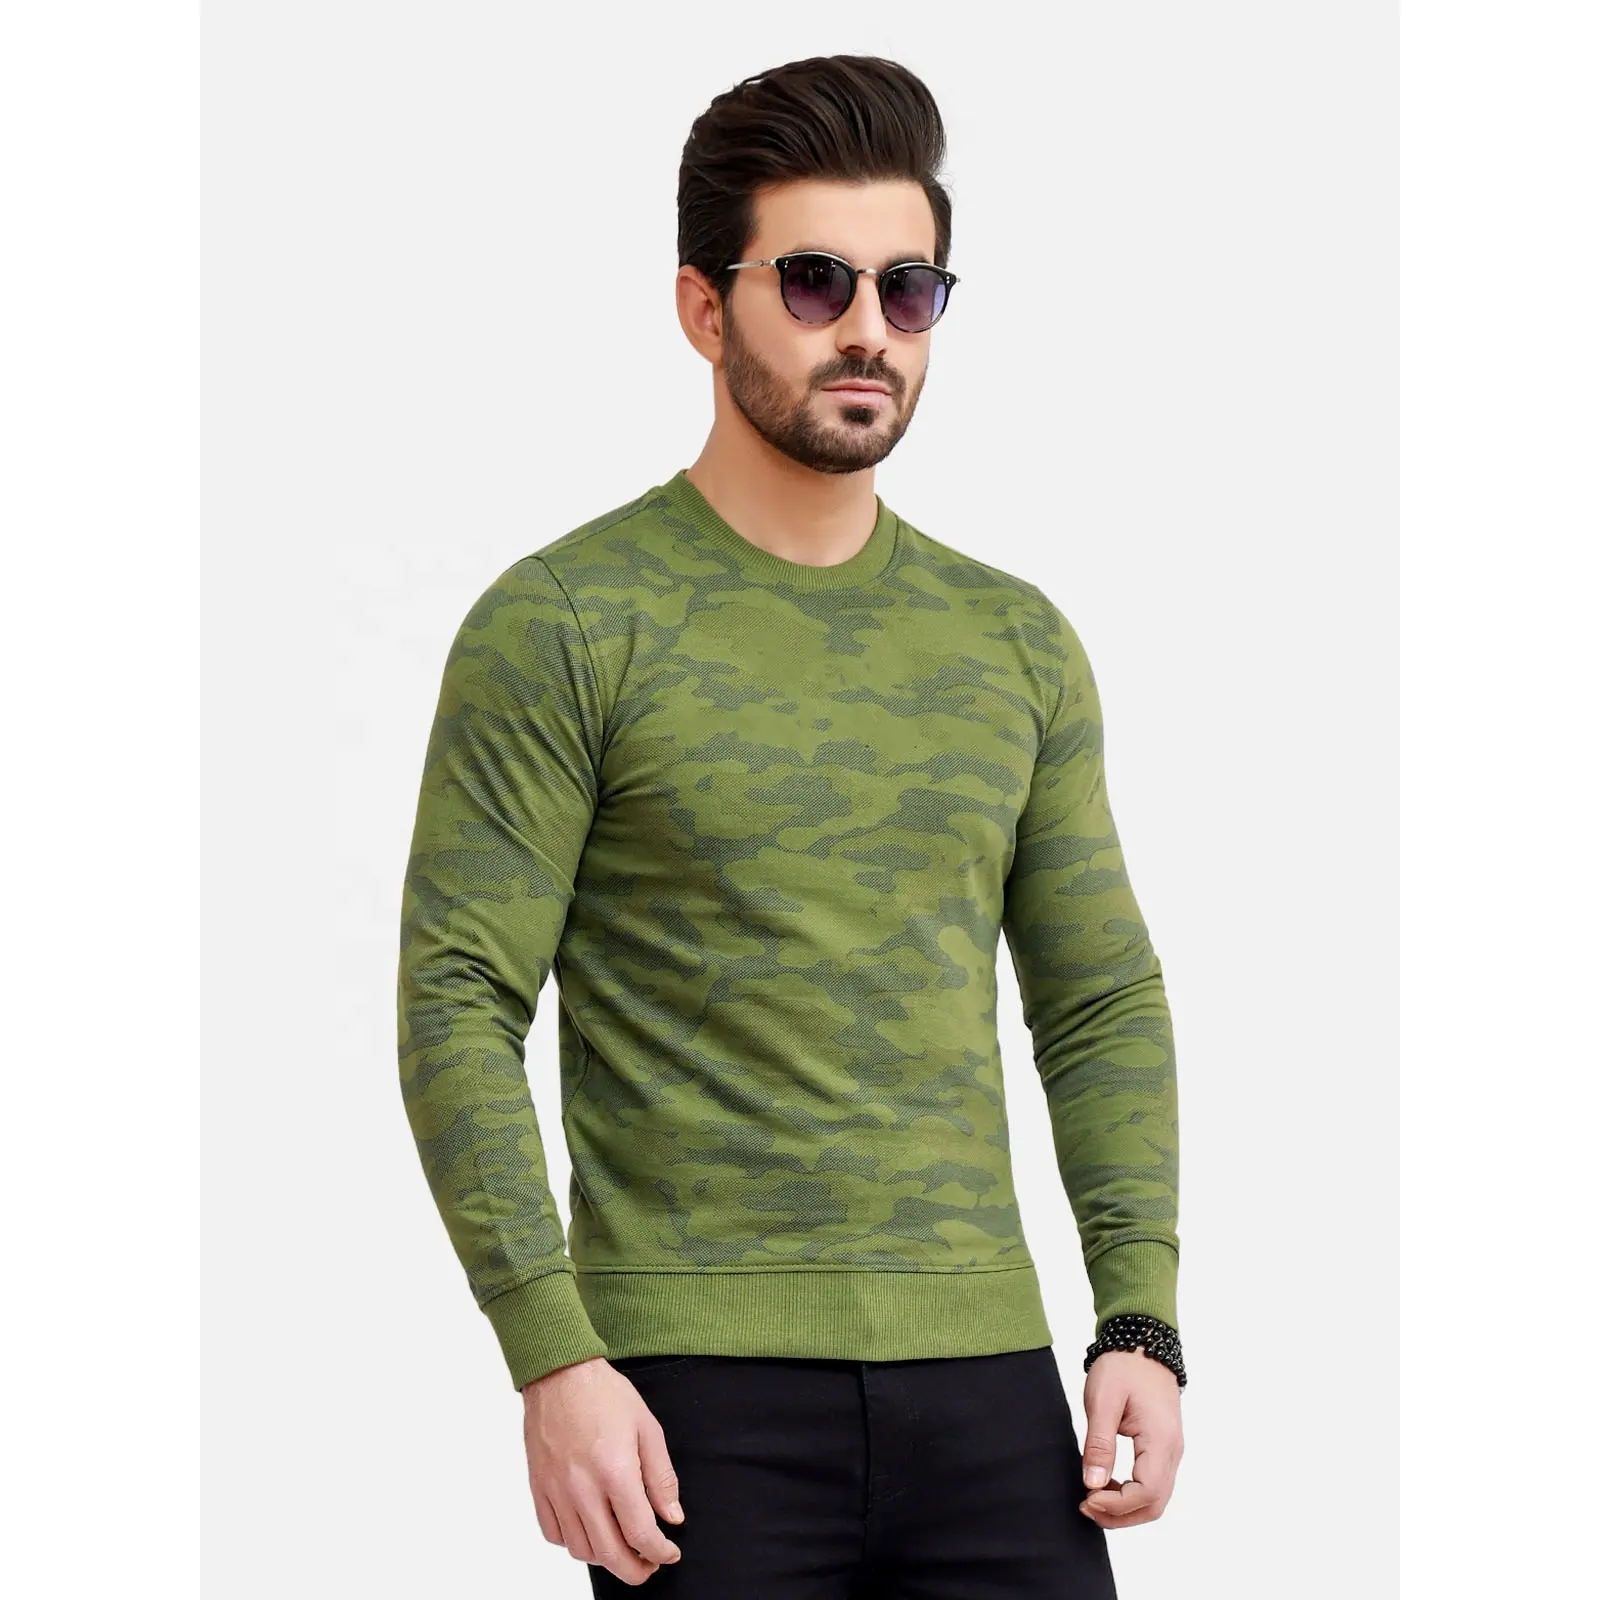 Новейший дизайн Свитшот укажите, какой цвет вам нужен 100% хлопка изготовленные на заказ мужчины спортивные рубашки Оптовая торговля Высокое качество негабаритных пуловер с вырезом лодочкой, sw